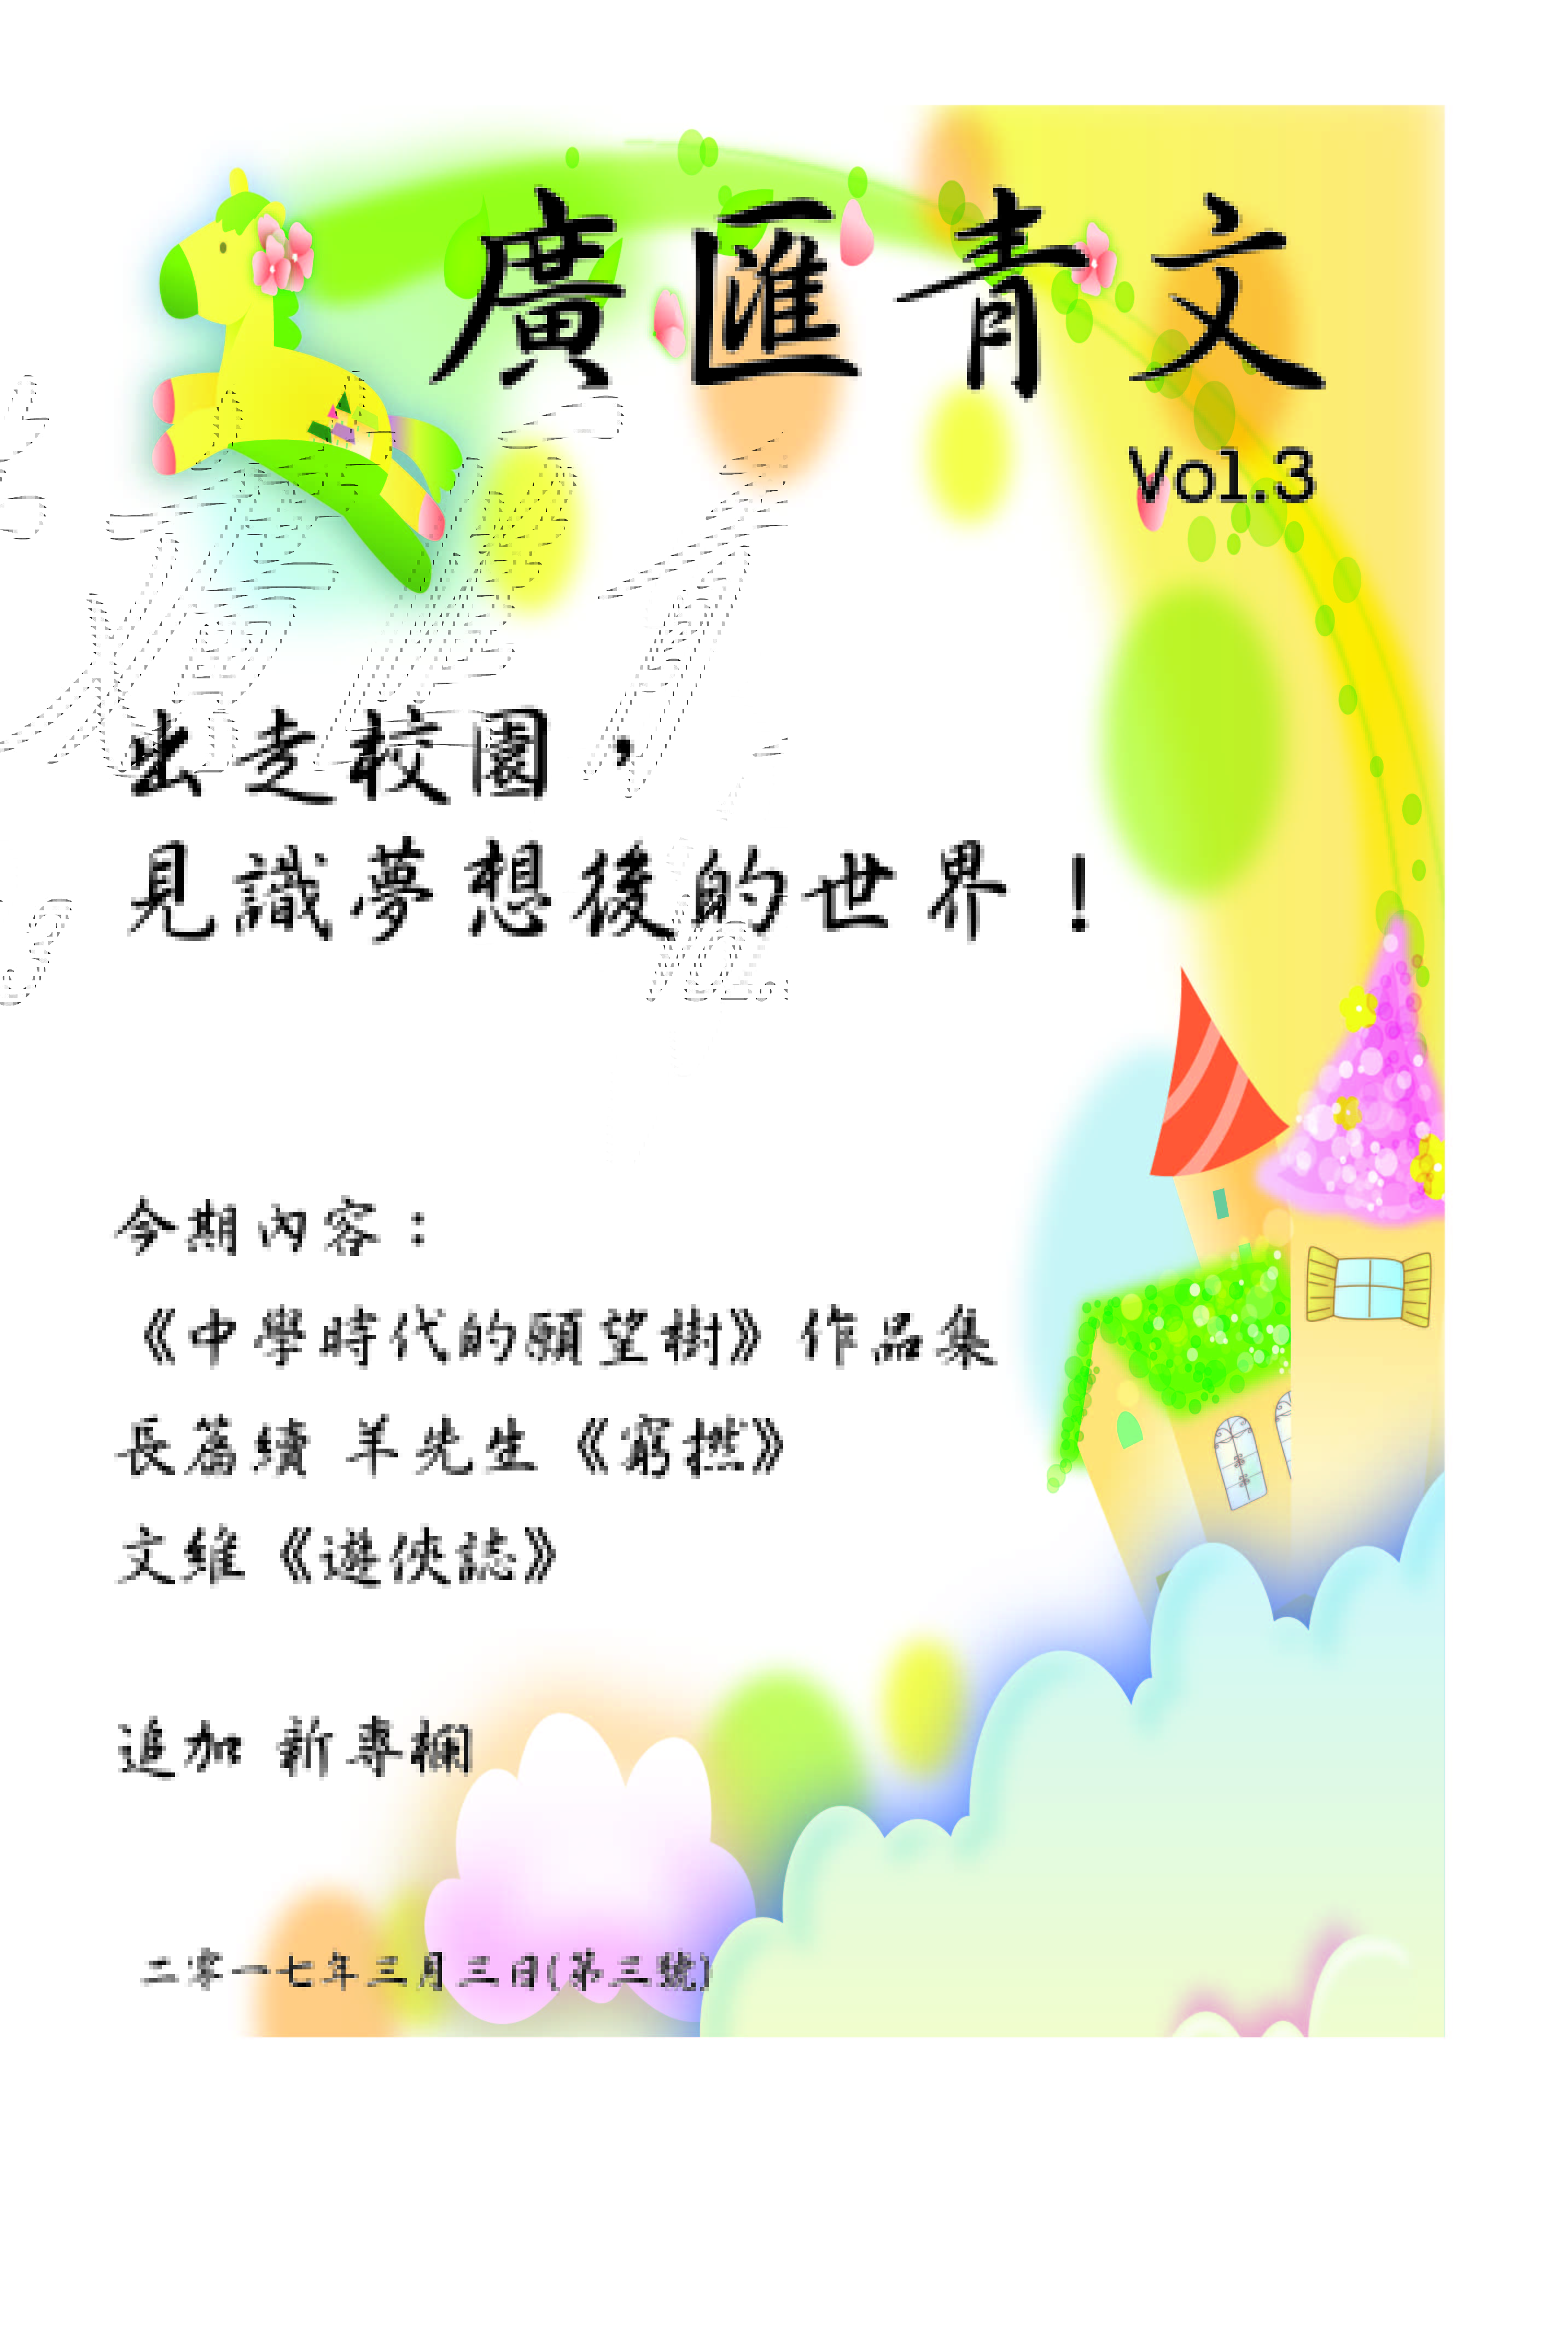 廣匯青文 Vol.3 (預告)